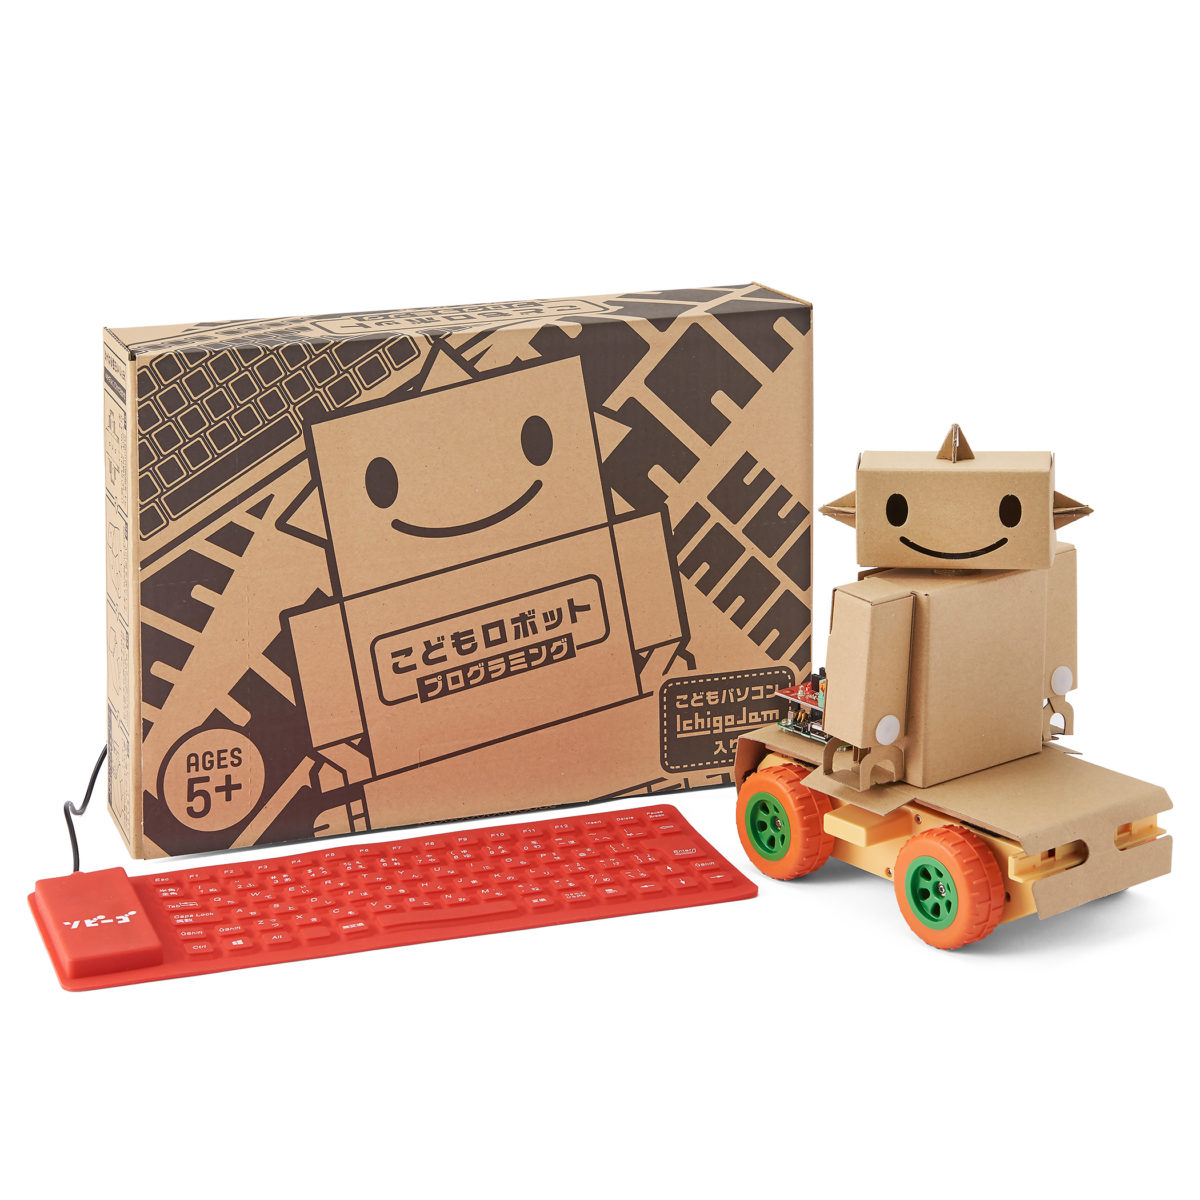 CodeCampusにソビーゴロボットが掲載されました!